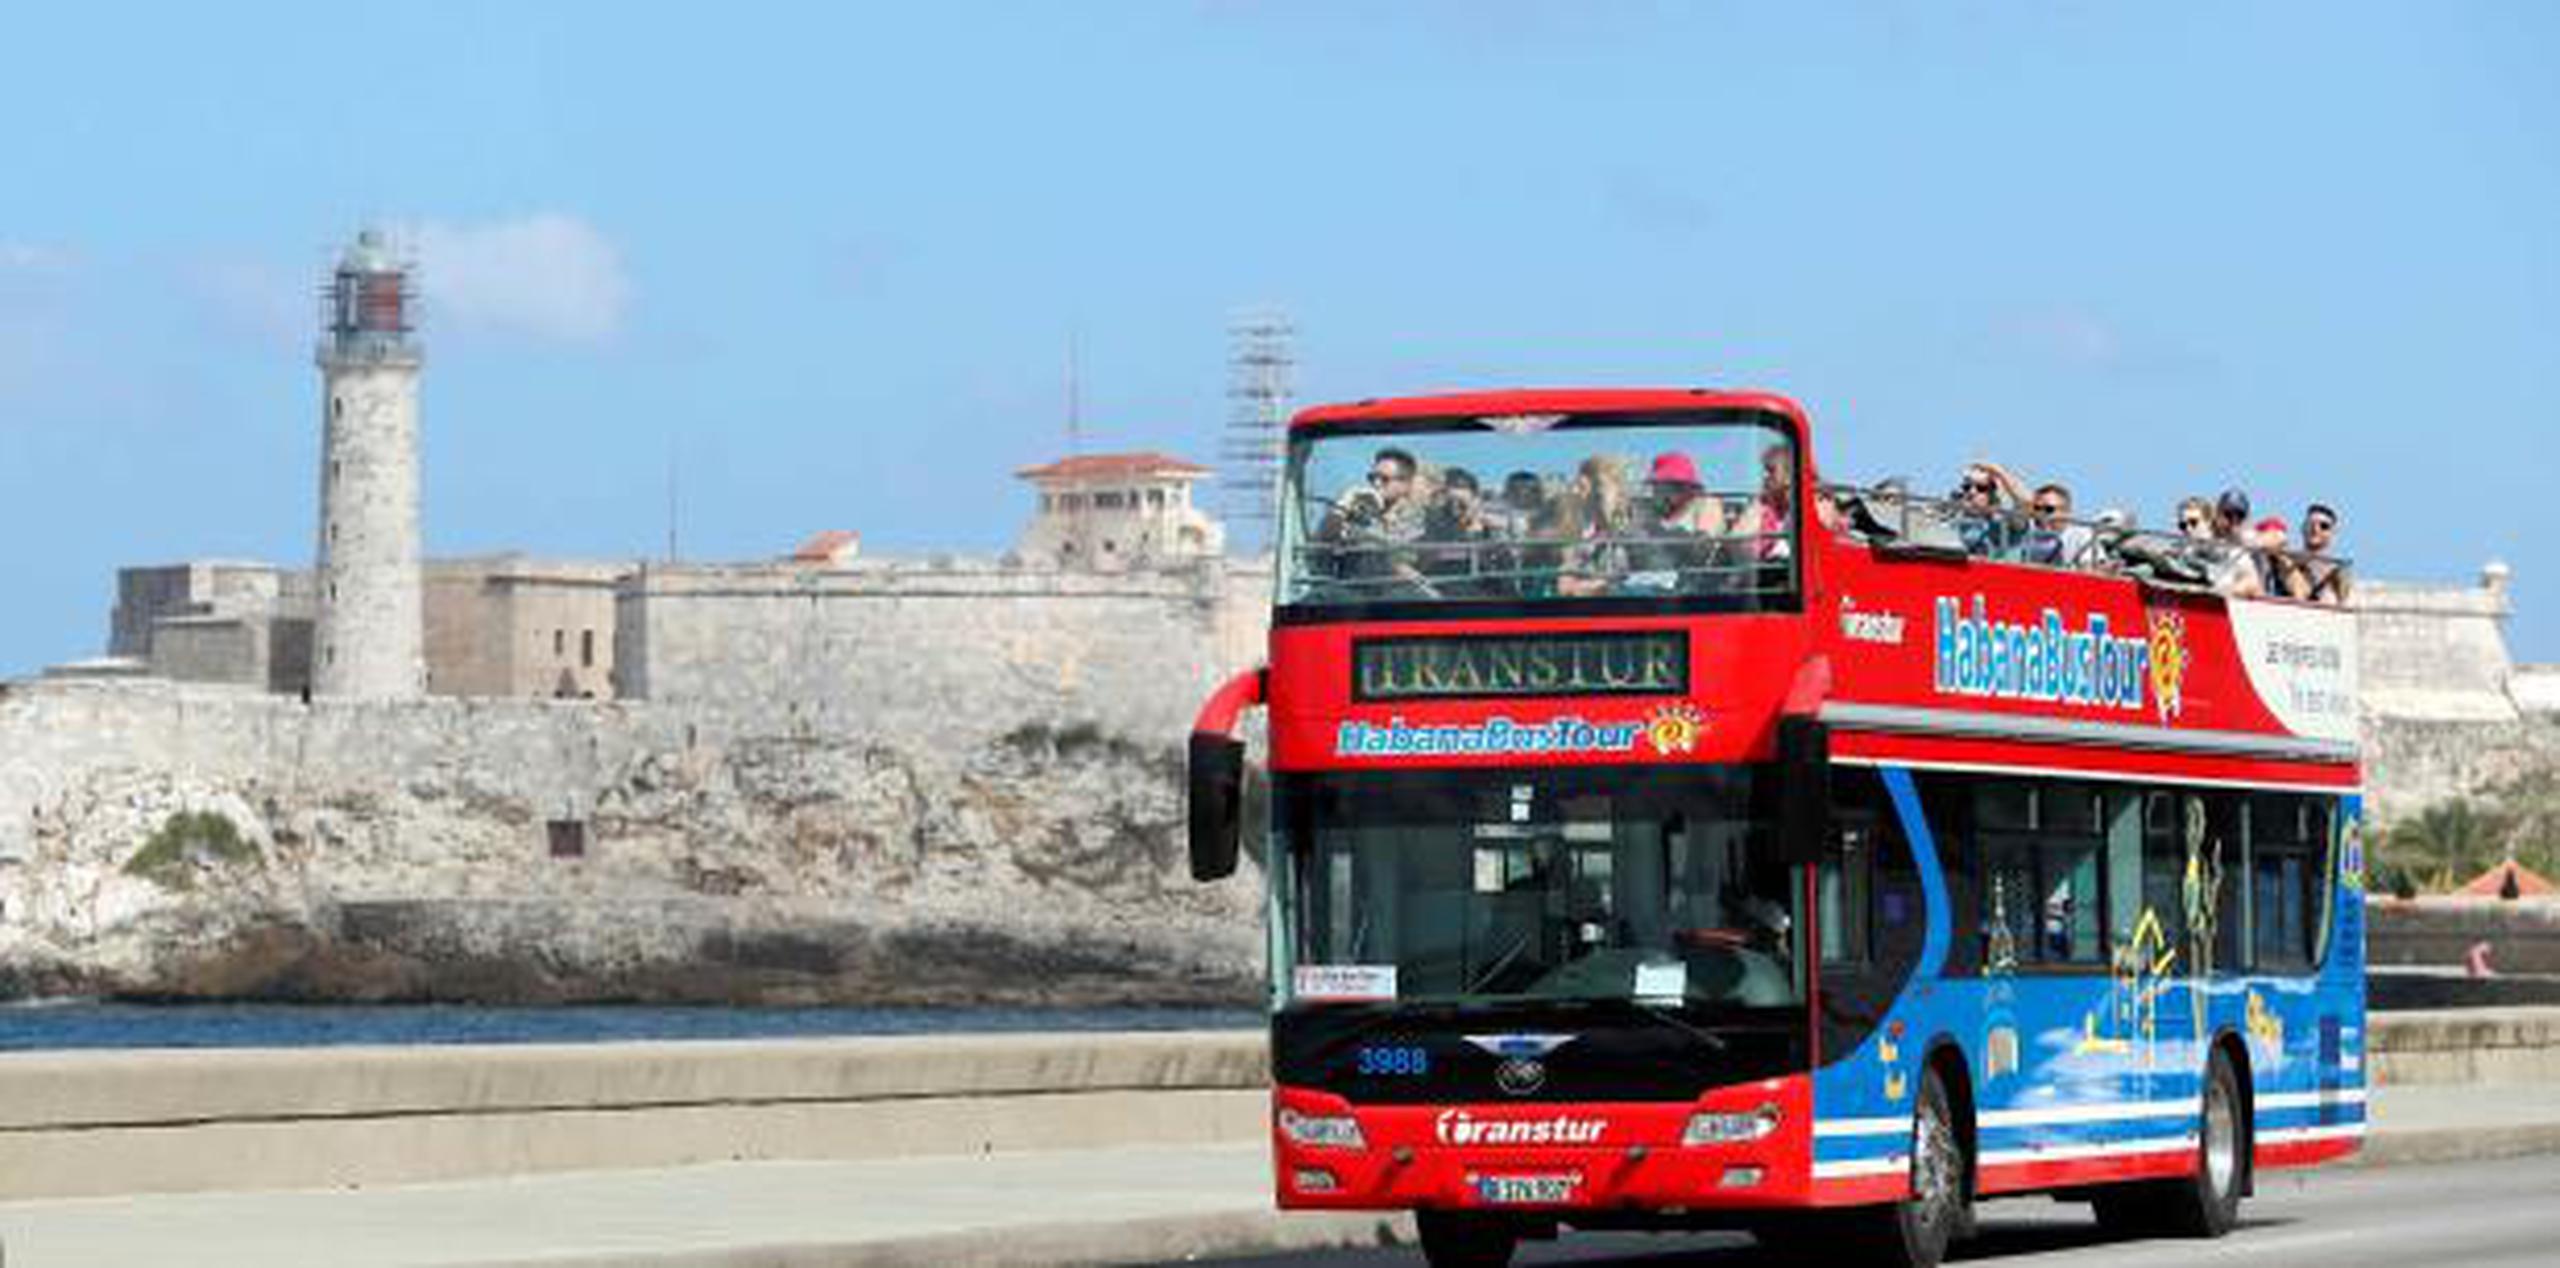 La regulación de Estados Unidos prohíbe a los estadounidenses hacer viajes de turismo a Cuba. (Archivo)